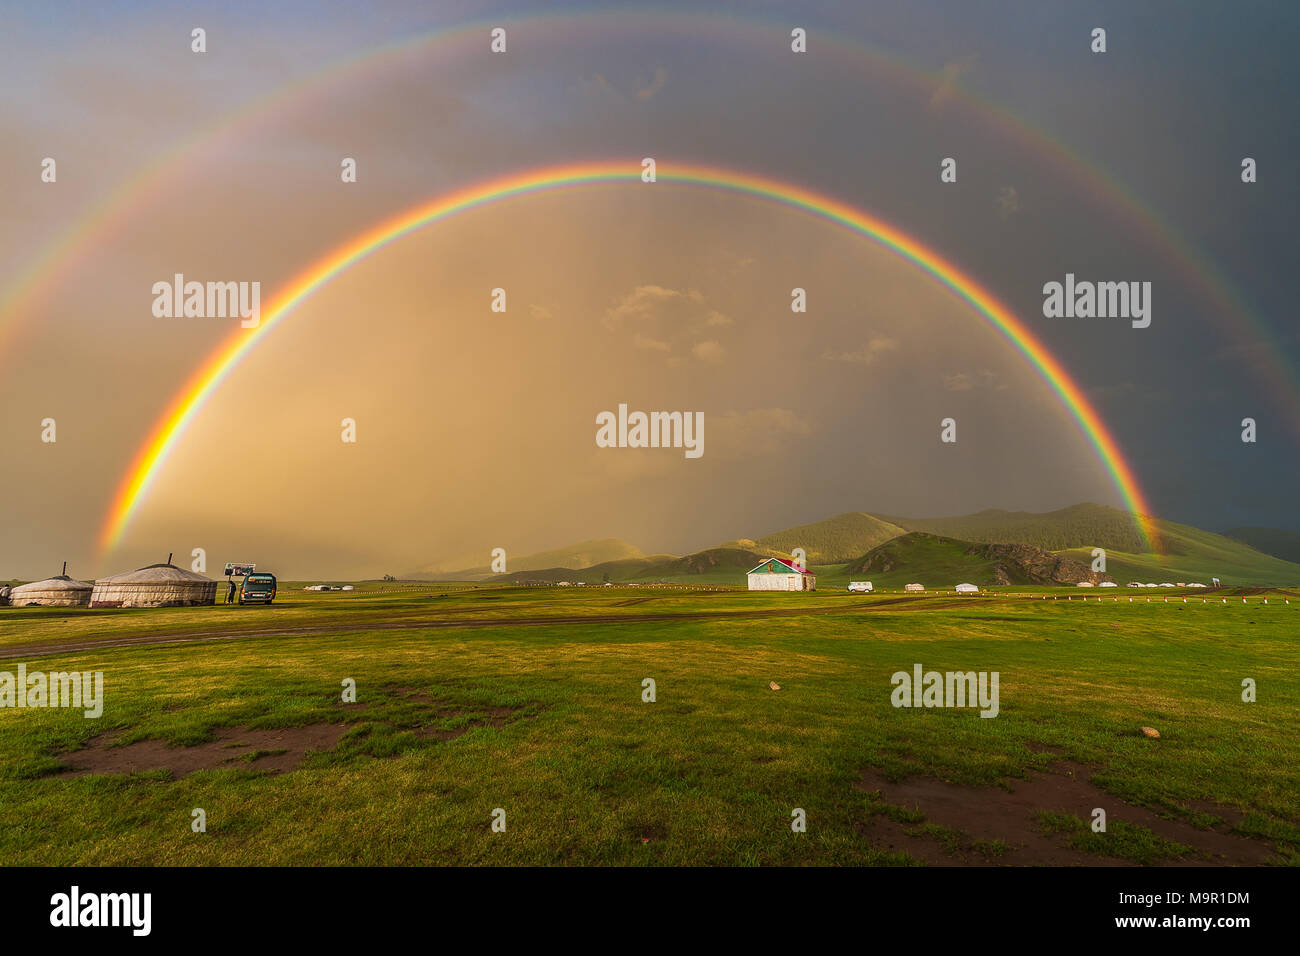 Doble arco iris sobre nomad yurts en un paisaje verde, Mongolia Foto de stock